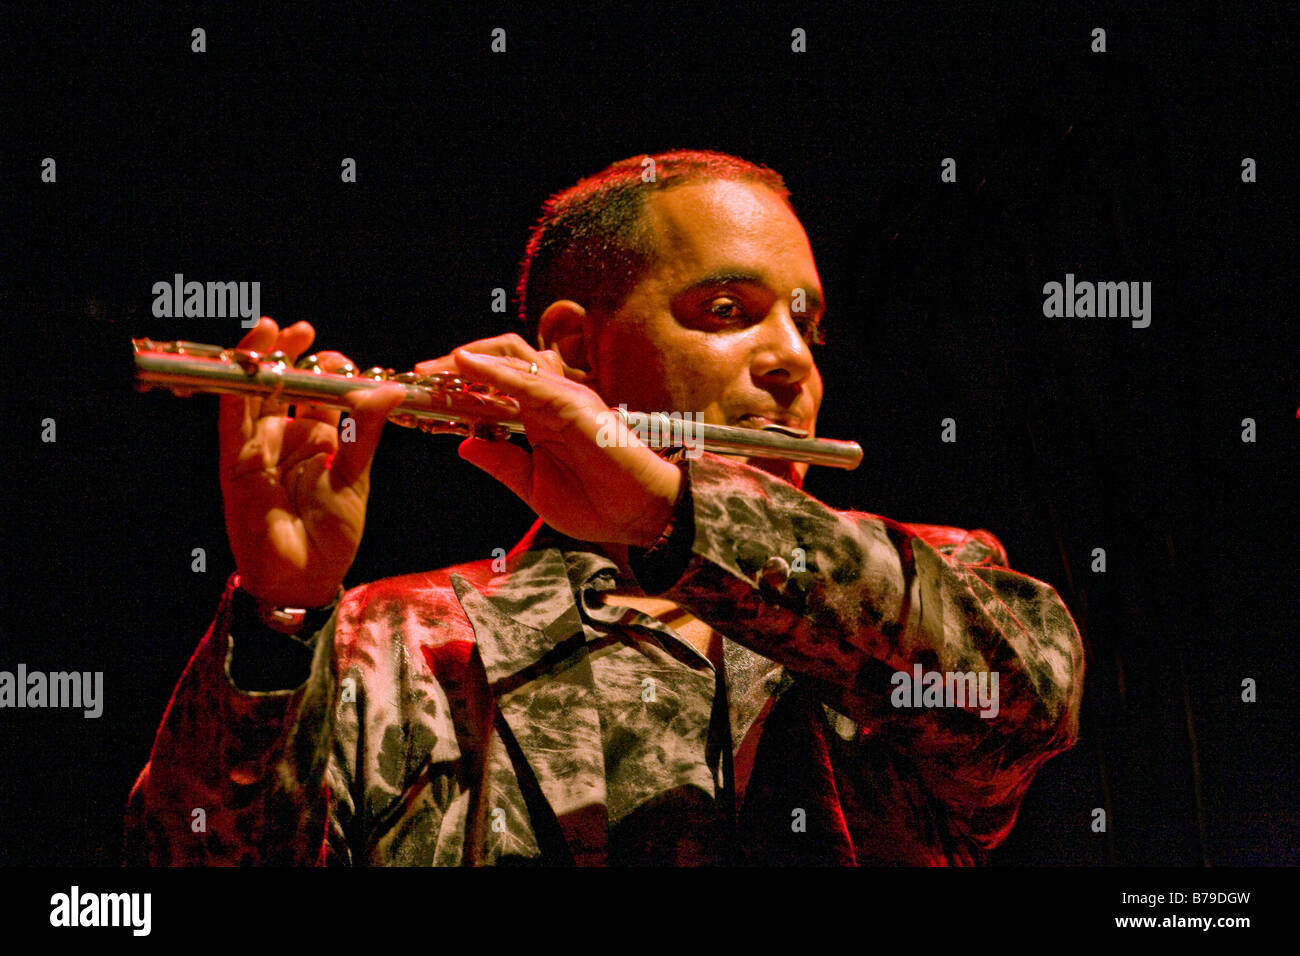 Joueur de flûte ORLANDO VALLE MARACA appelé Afro Cuban Jazz joue au 51e Festival de jazz de Monterey Monterey Californie Banque D'Images